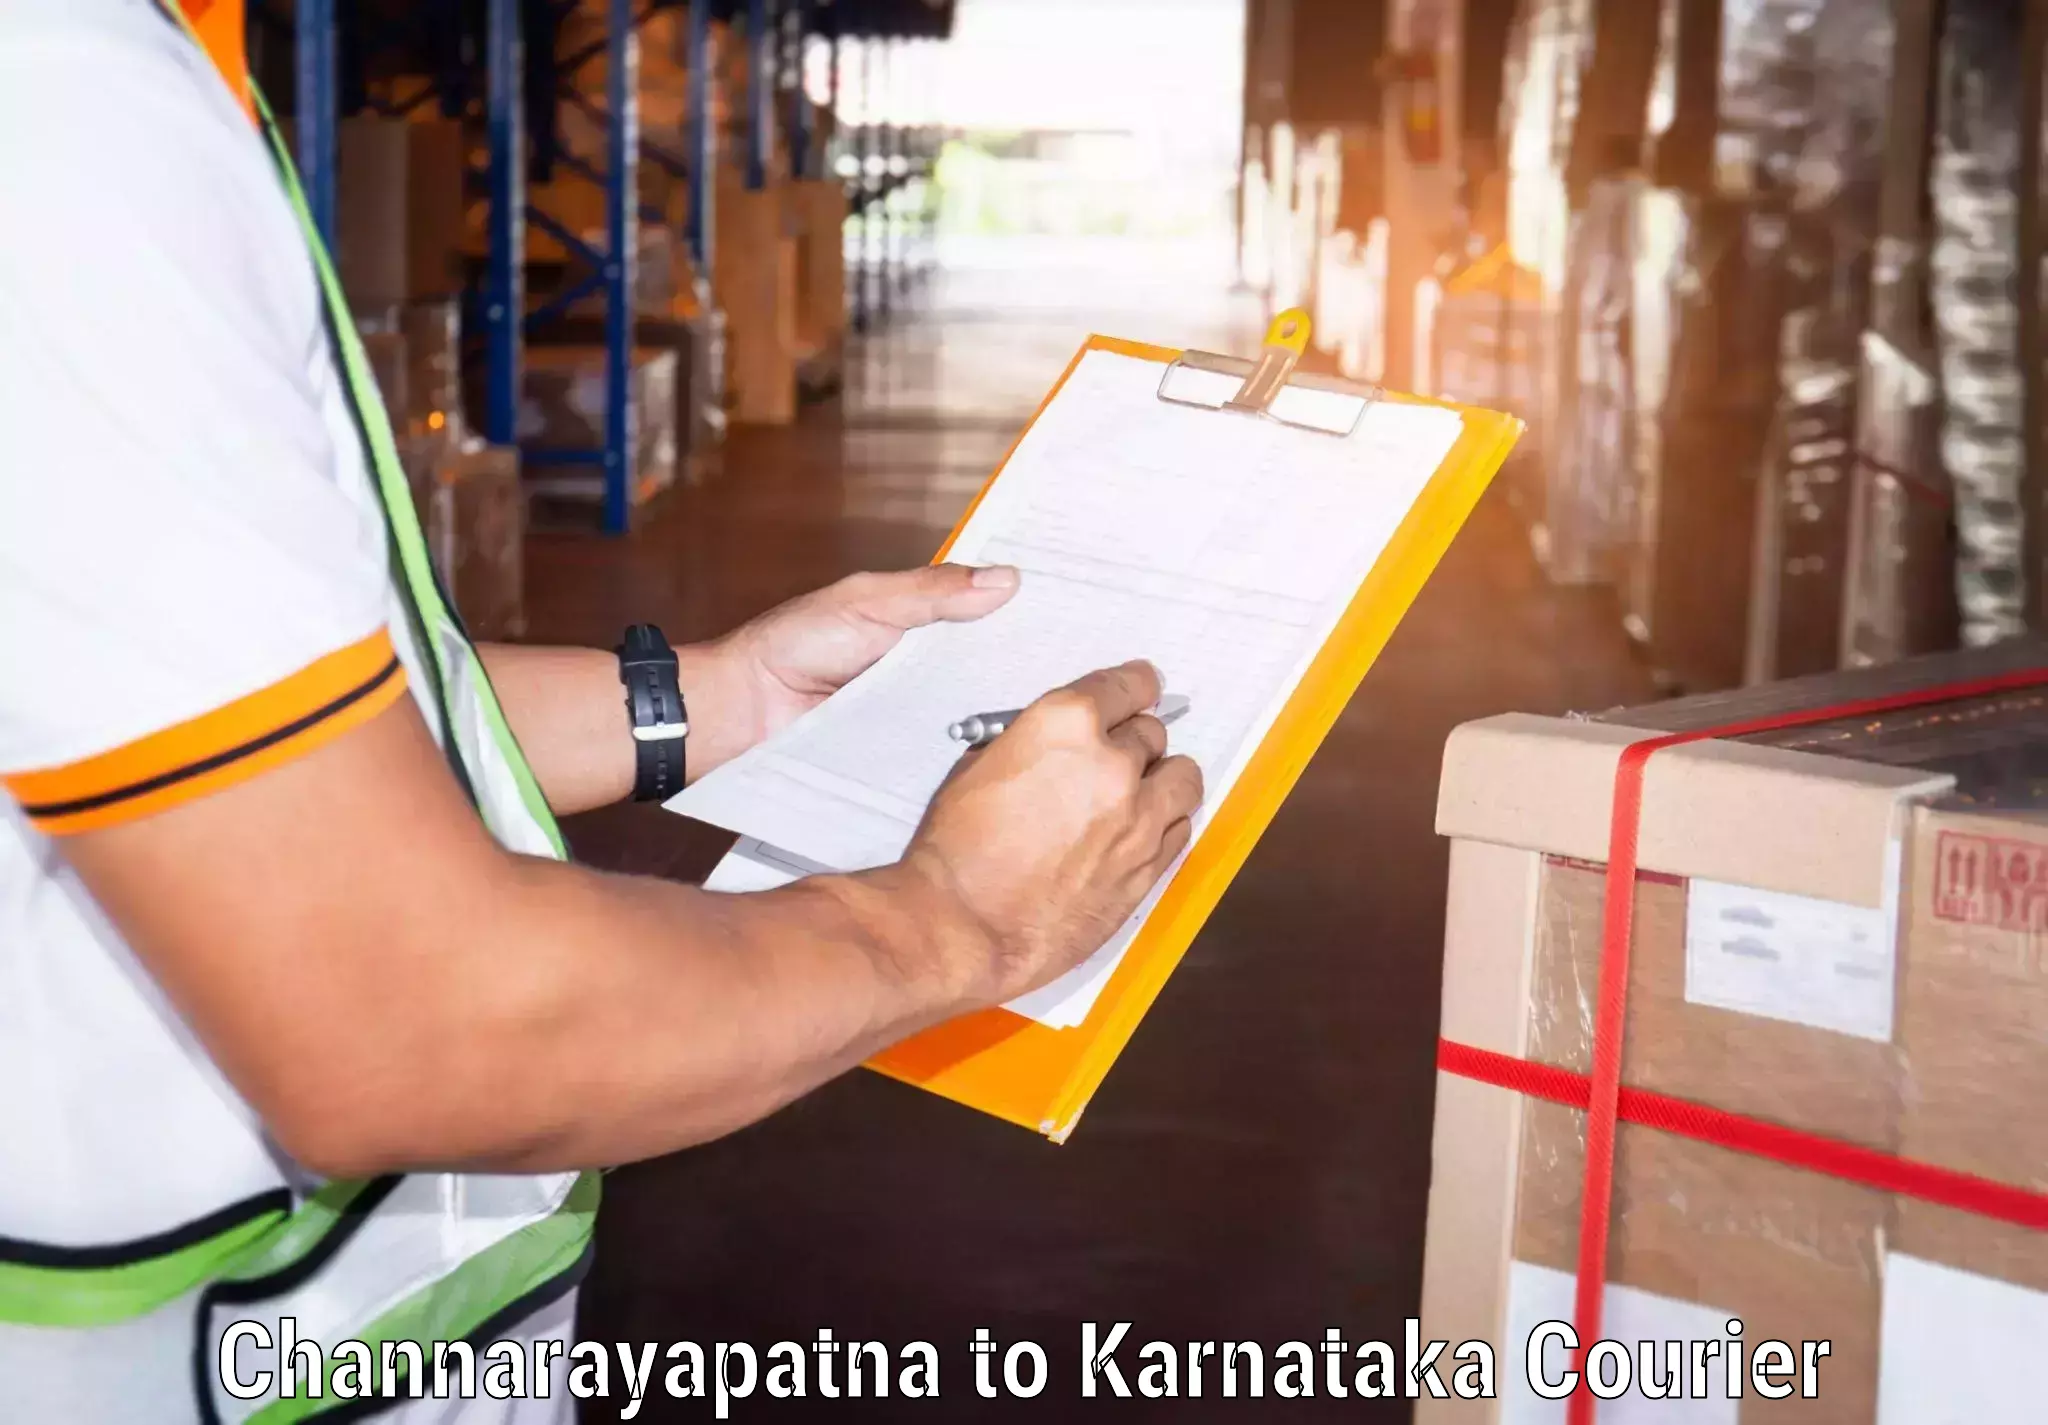 Tailored freight services Channarayapatna to Yenepoya Mangalore